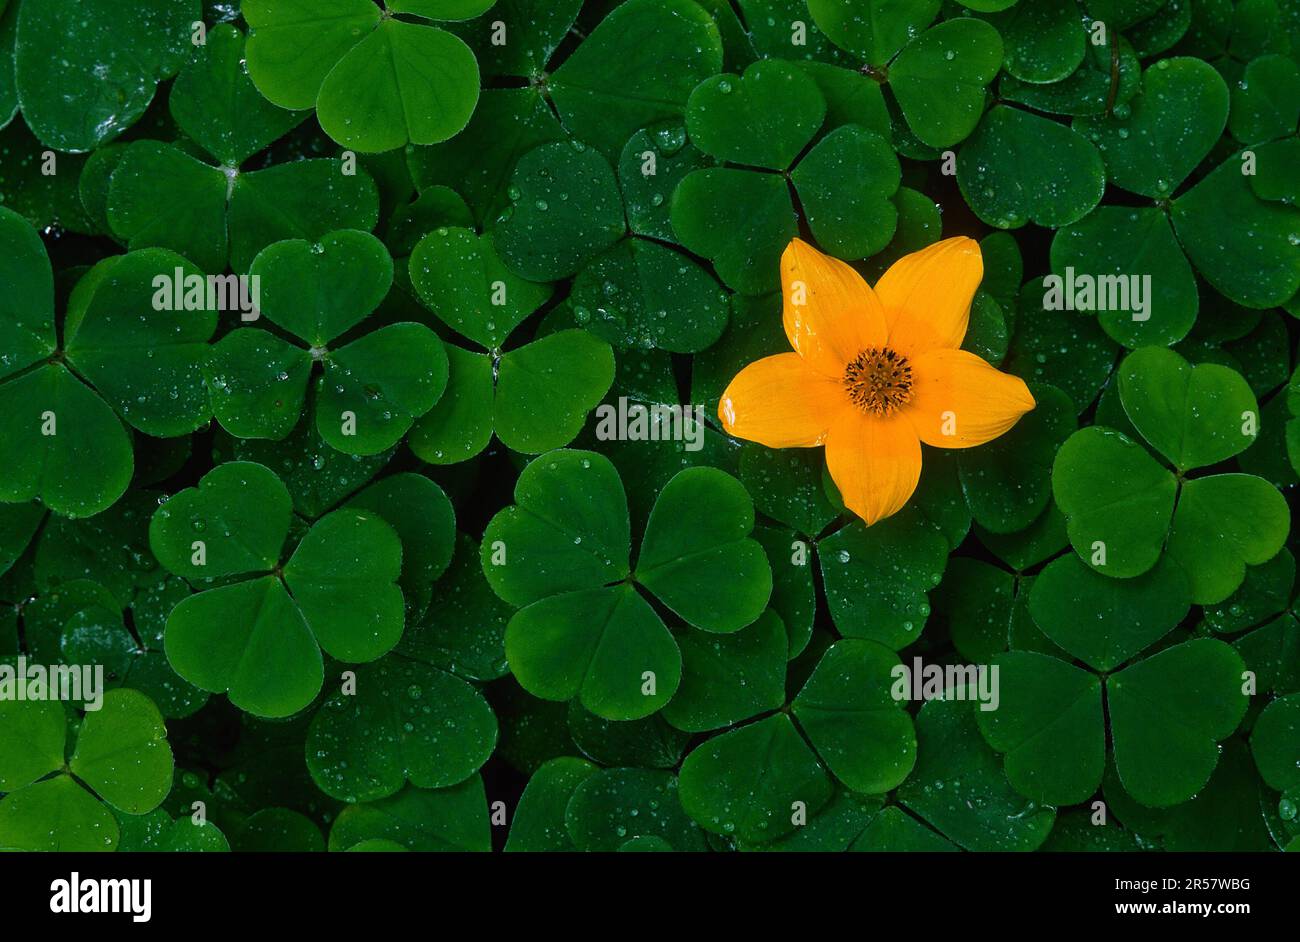 Yellow flower between clovers Stock Photo